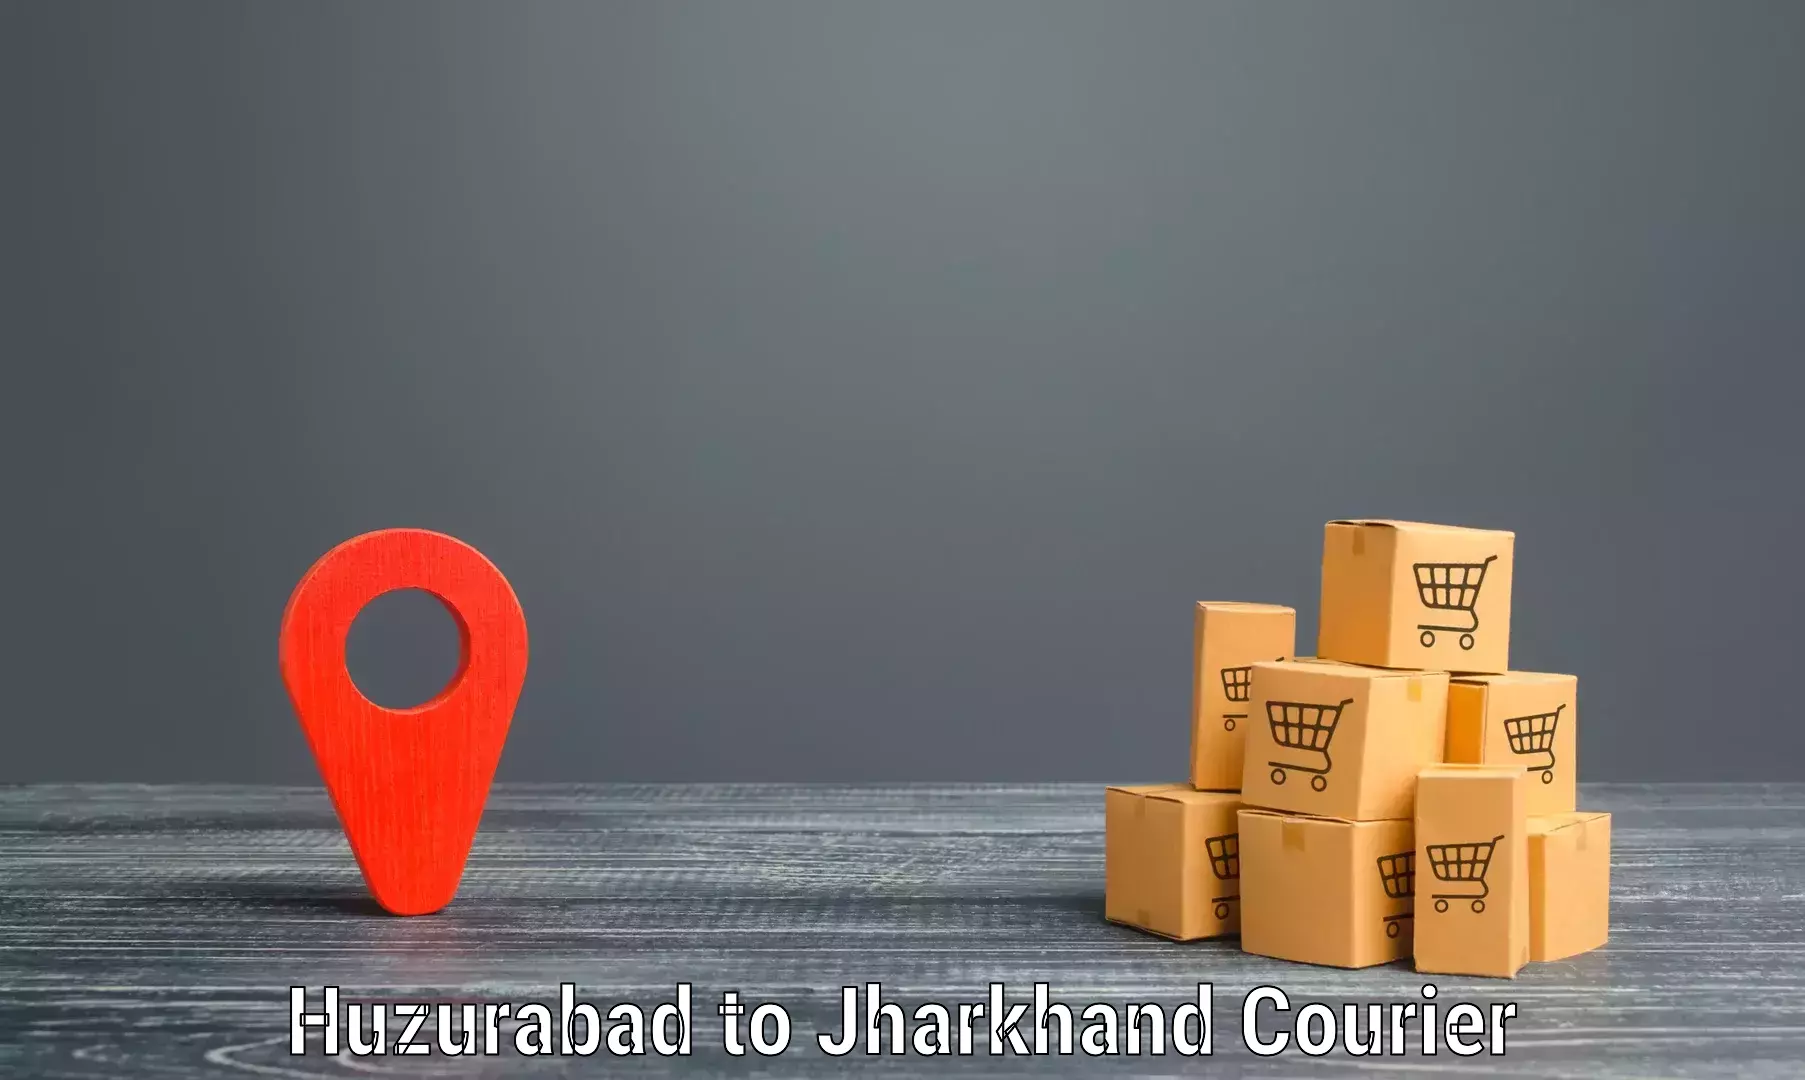 Modern courier technology Huzurabad to Gumla